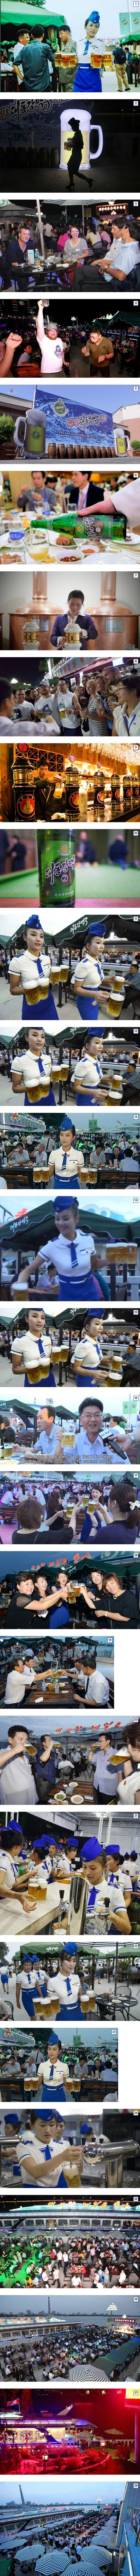 북한 대동강 맥주 축제...jpg